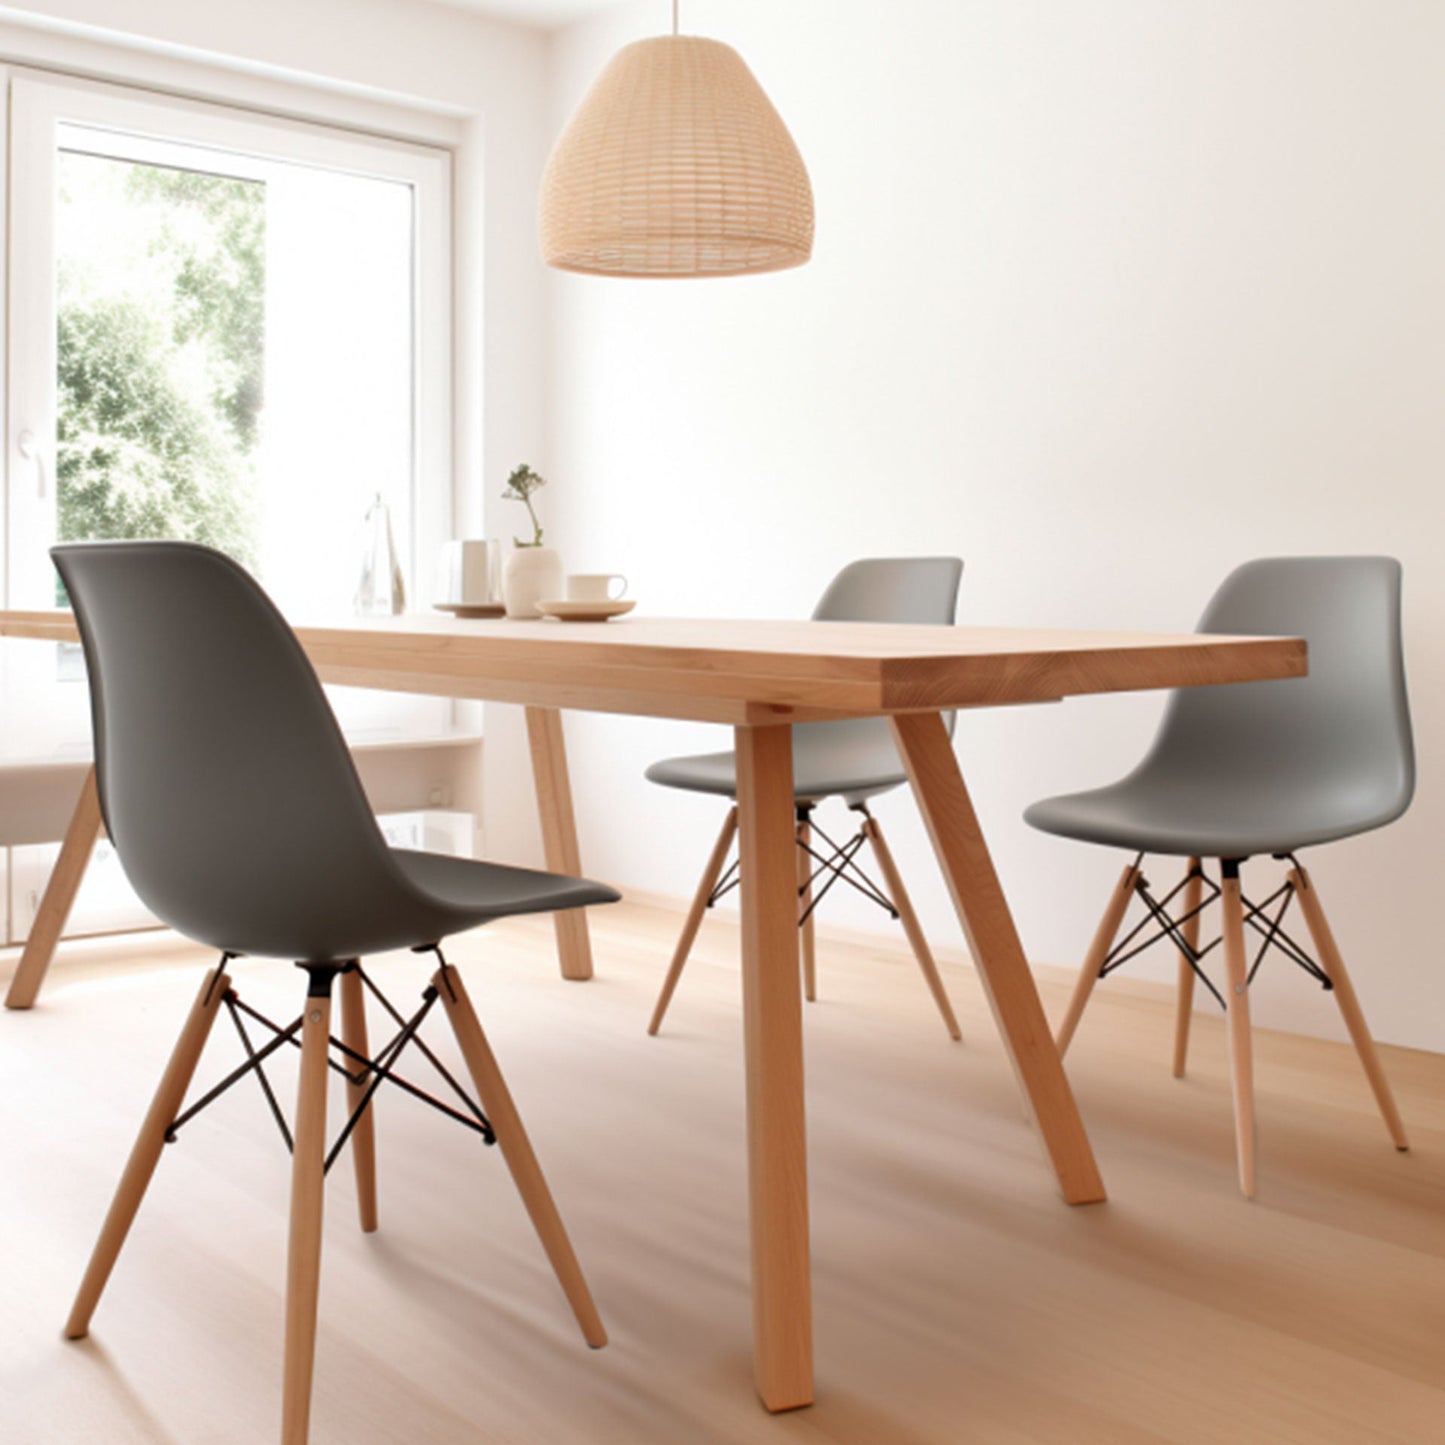 Silla Mirel Shell Minimalista para Comedor e interiores del hogar - Diseño moderno y ergonómico